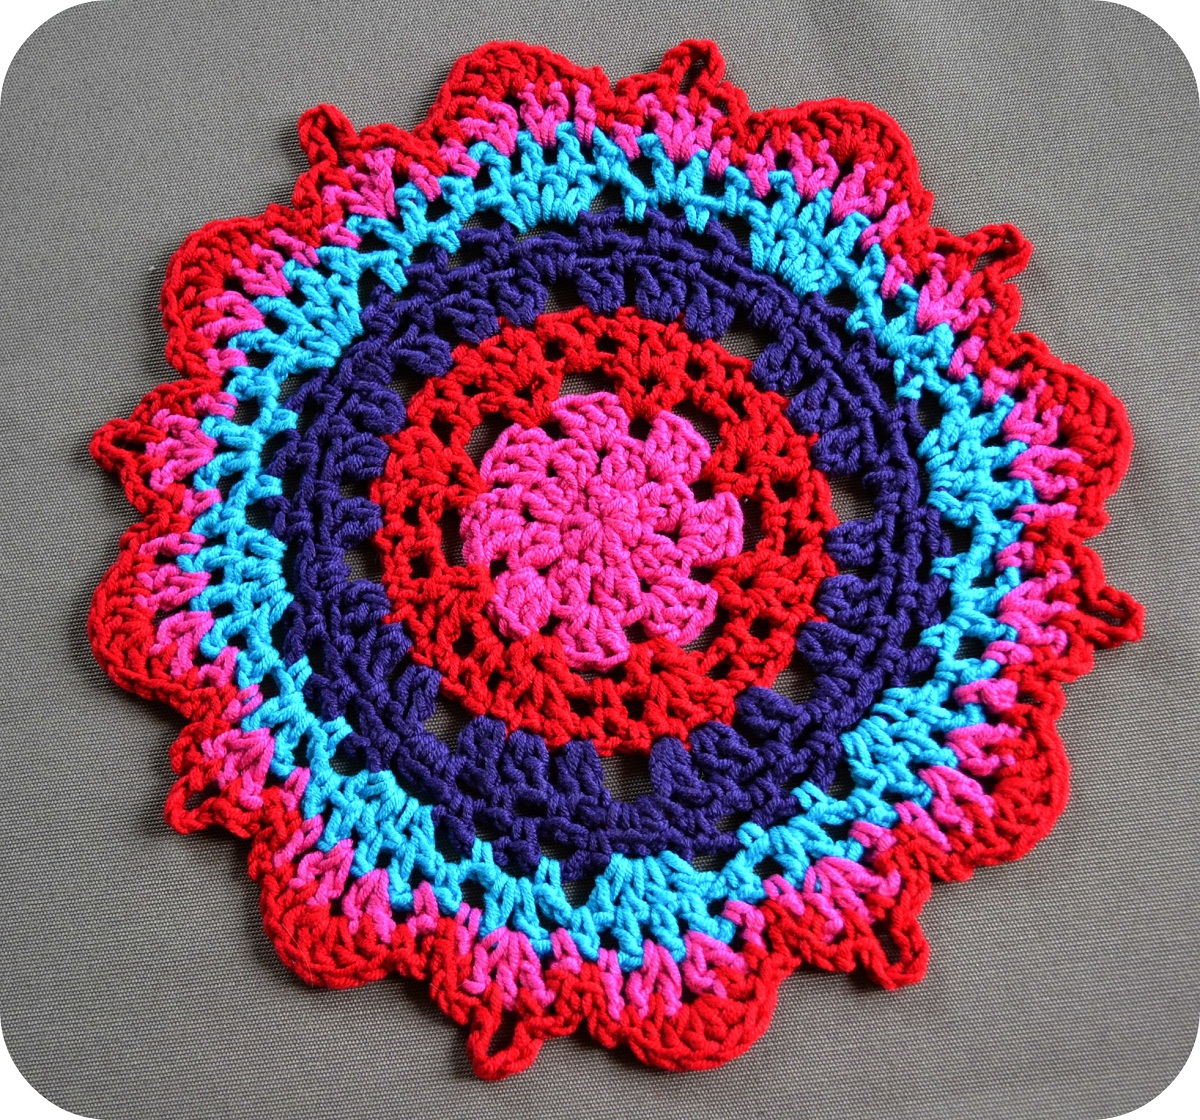 15-crochet-doily-patterns-guide-patterns